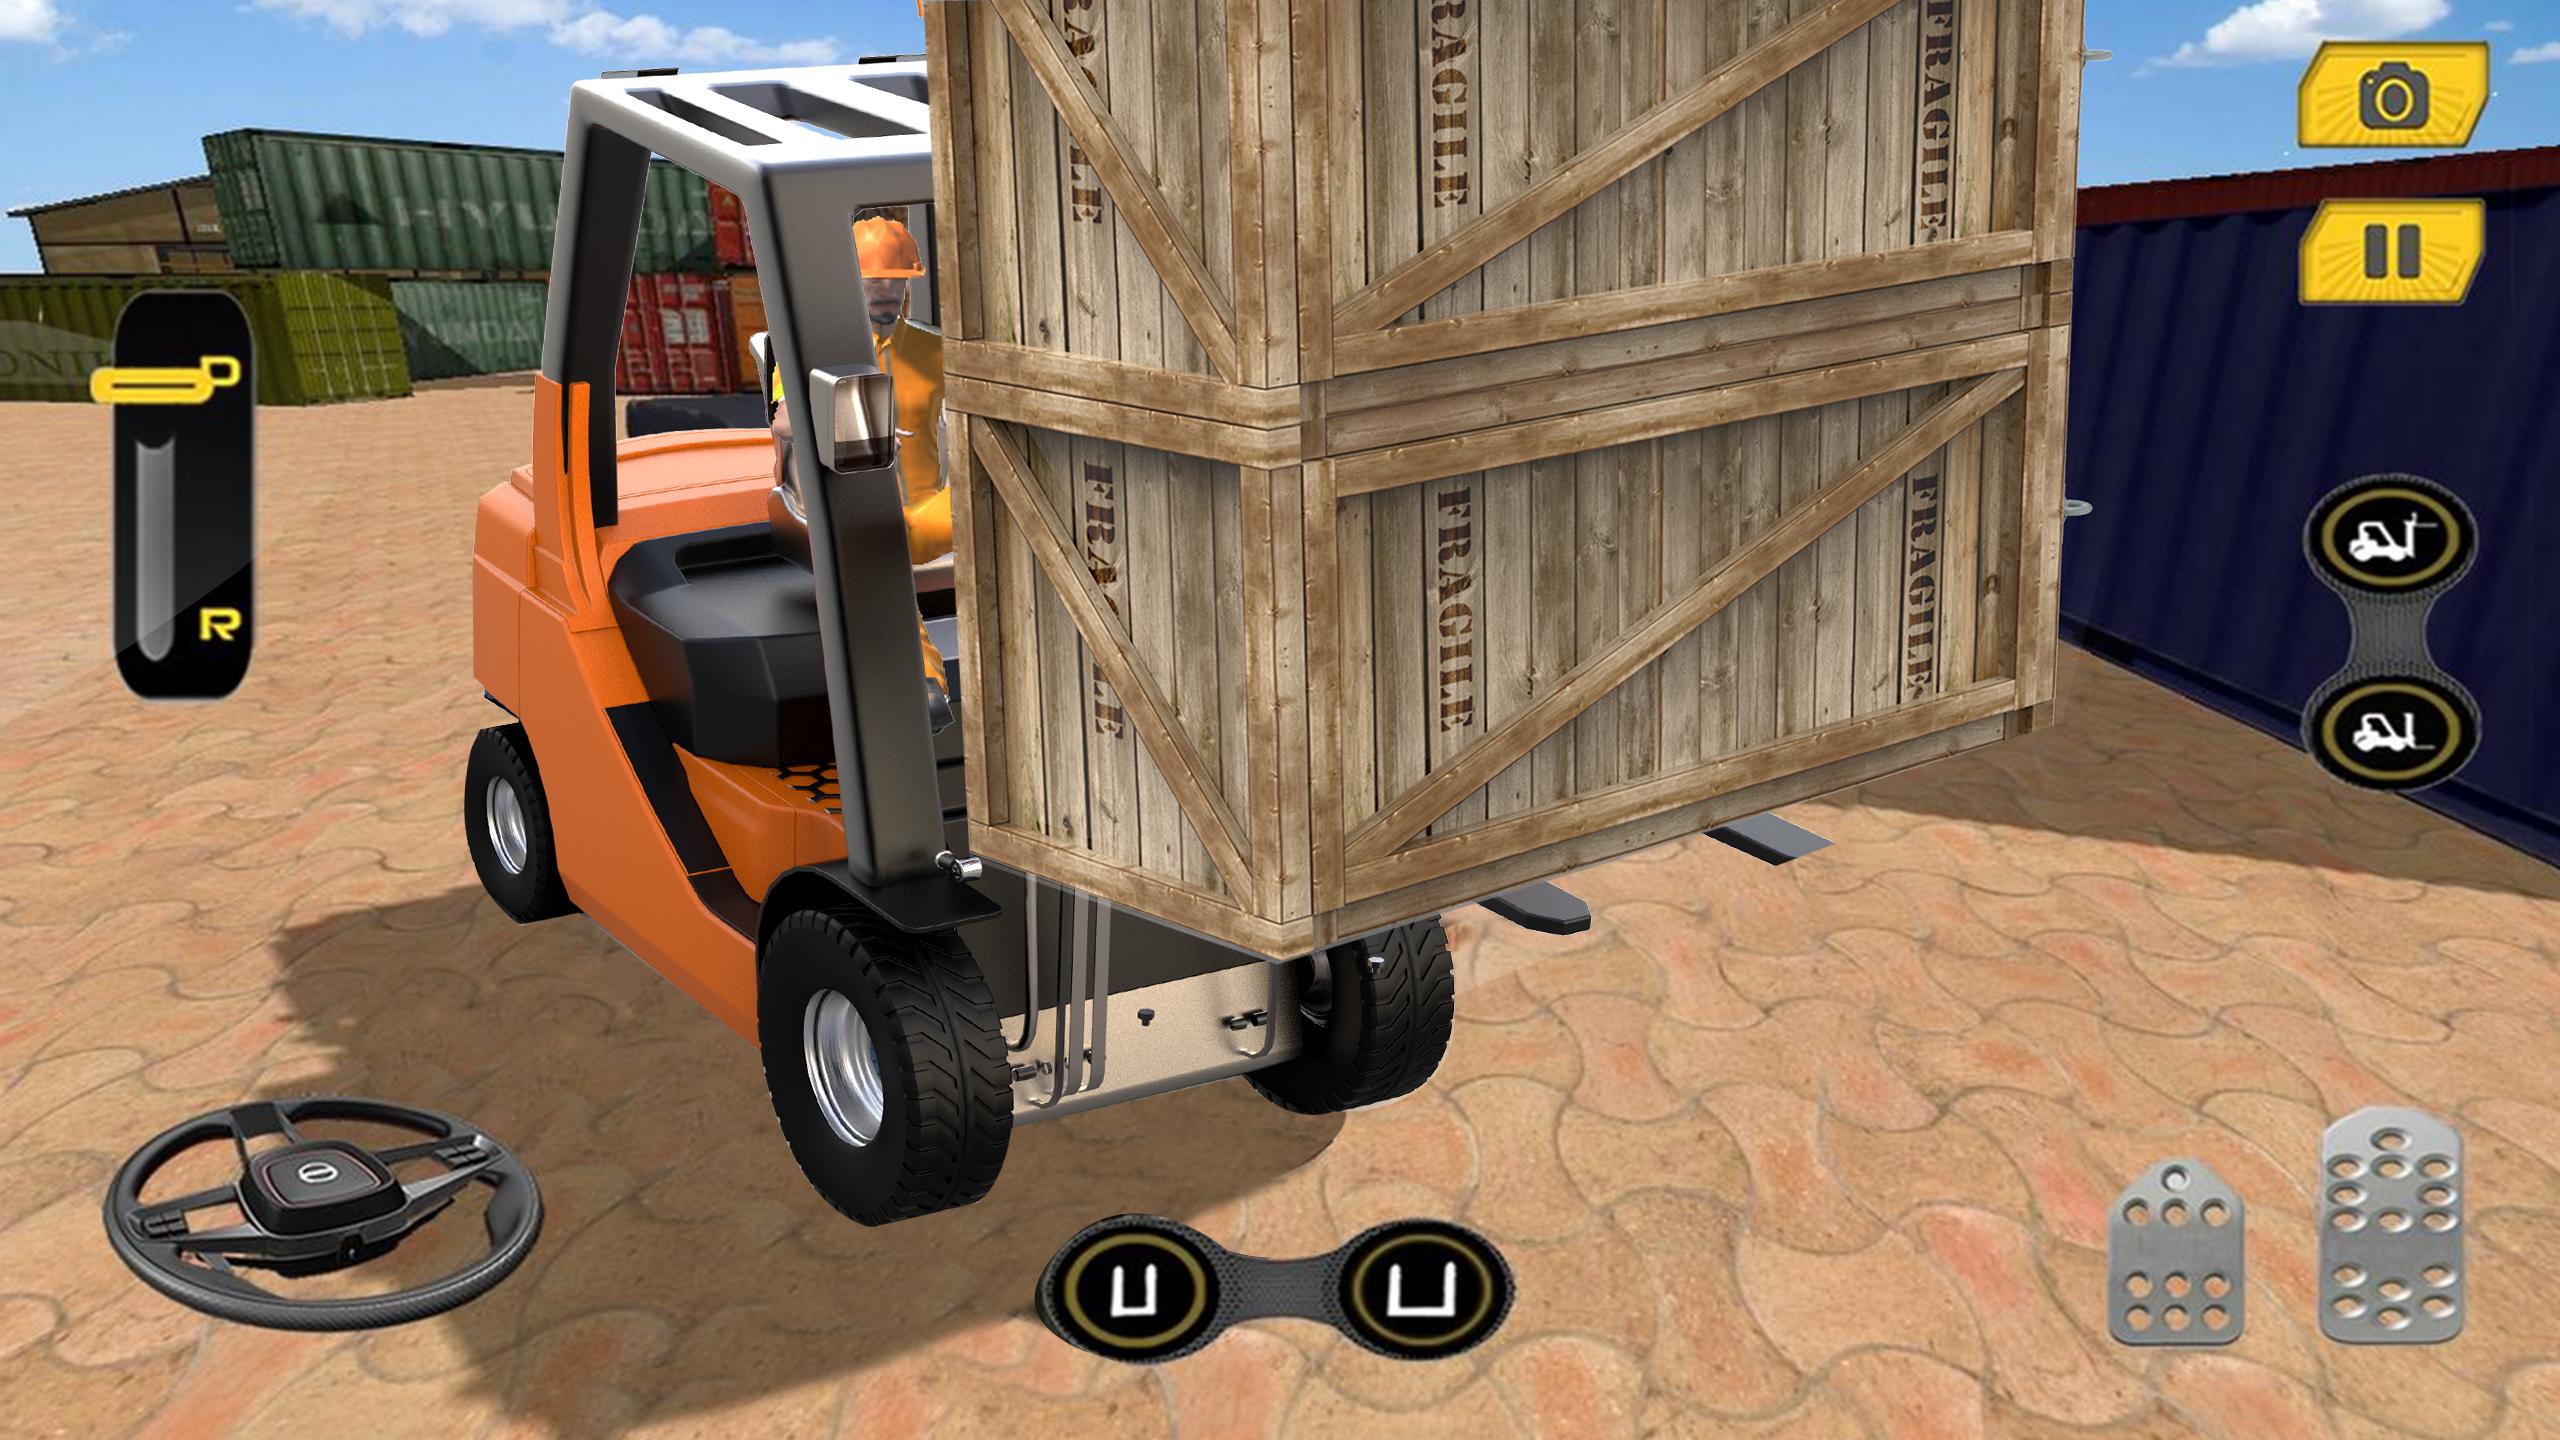 Real Forklift Simulator 2019: Cargo Forklift Games 3.1 Screenshot 5